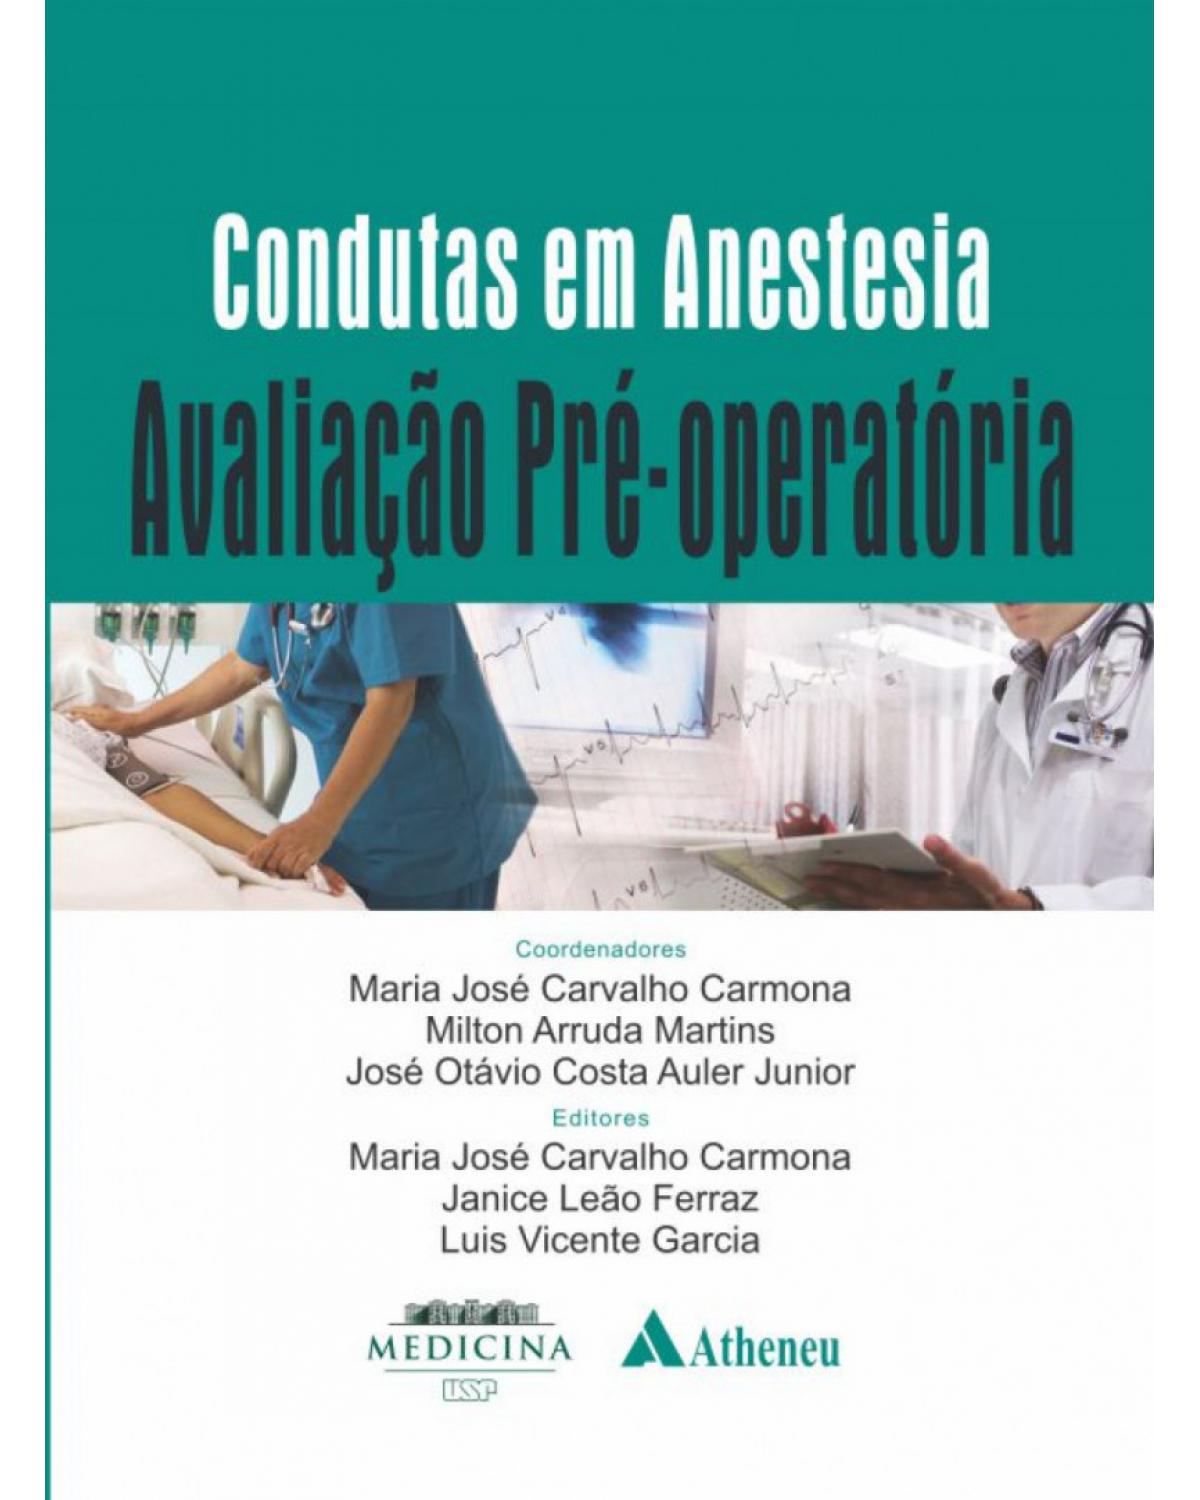 Condutas em anestesia - avaliação pré-operatória - 1ª Edição | 2017